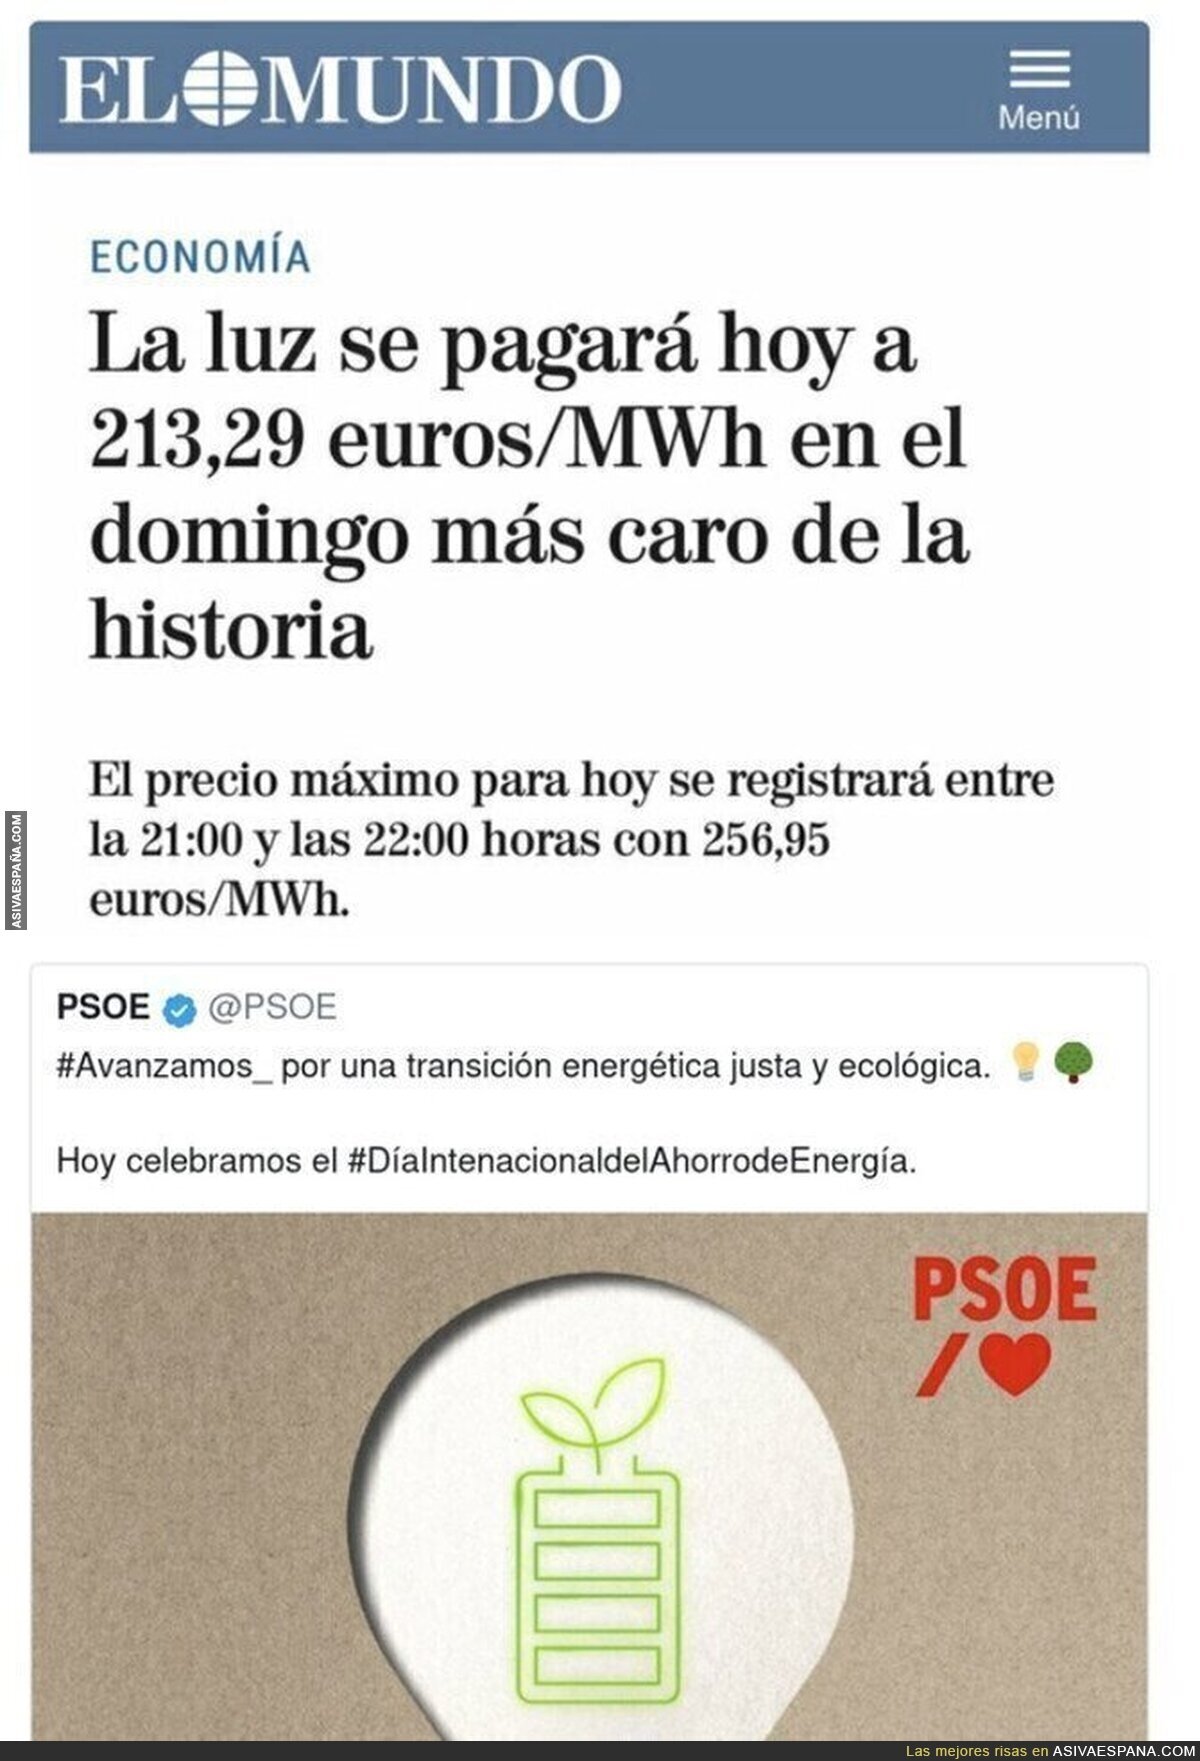 La transición energética justa y ecológica del PSOE